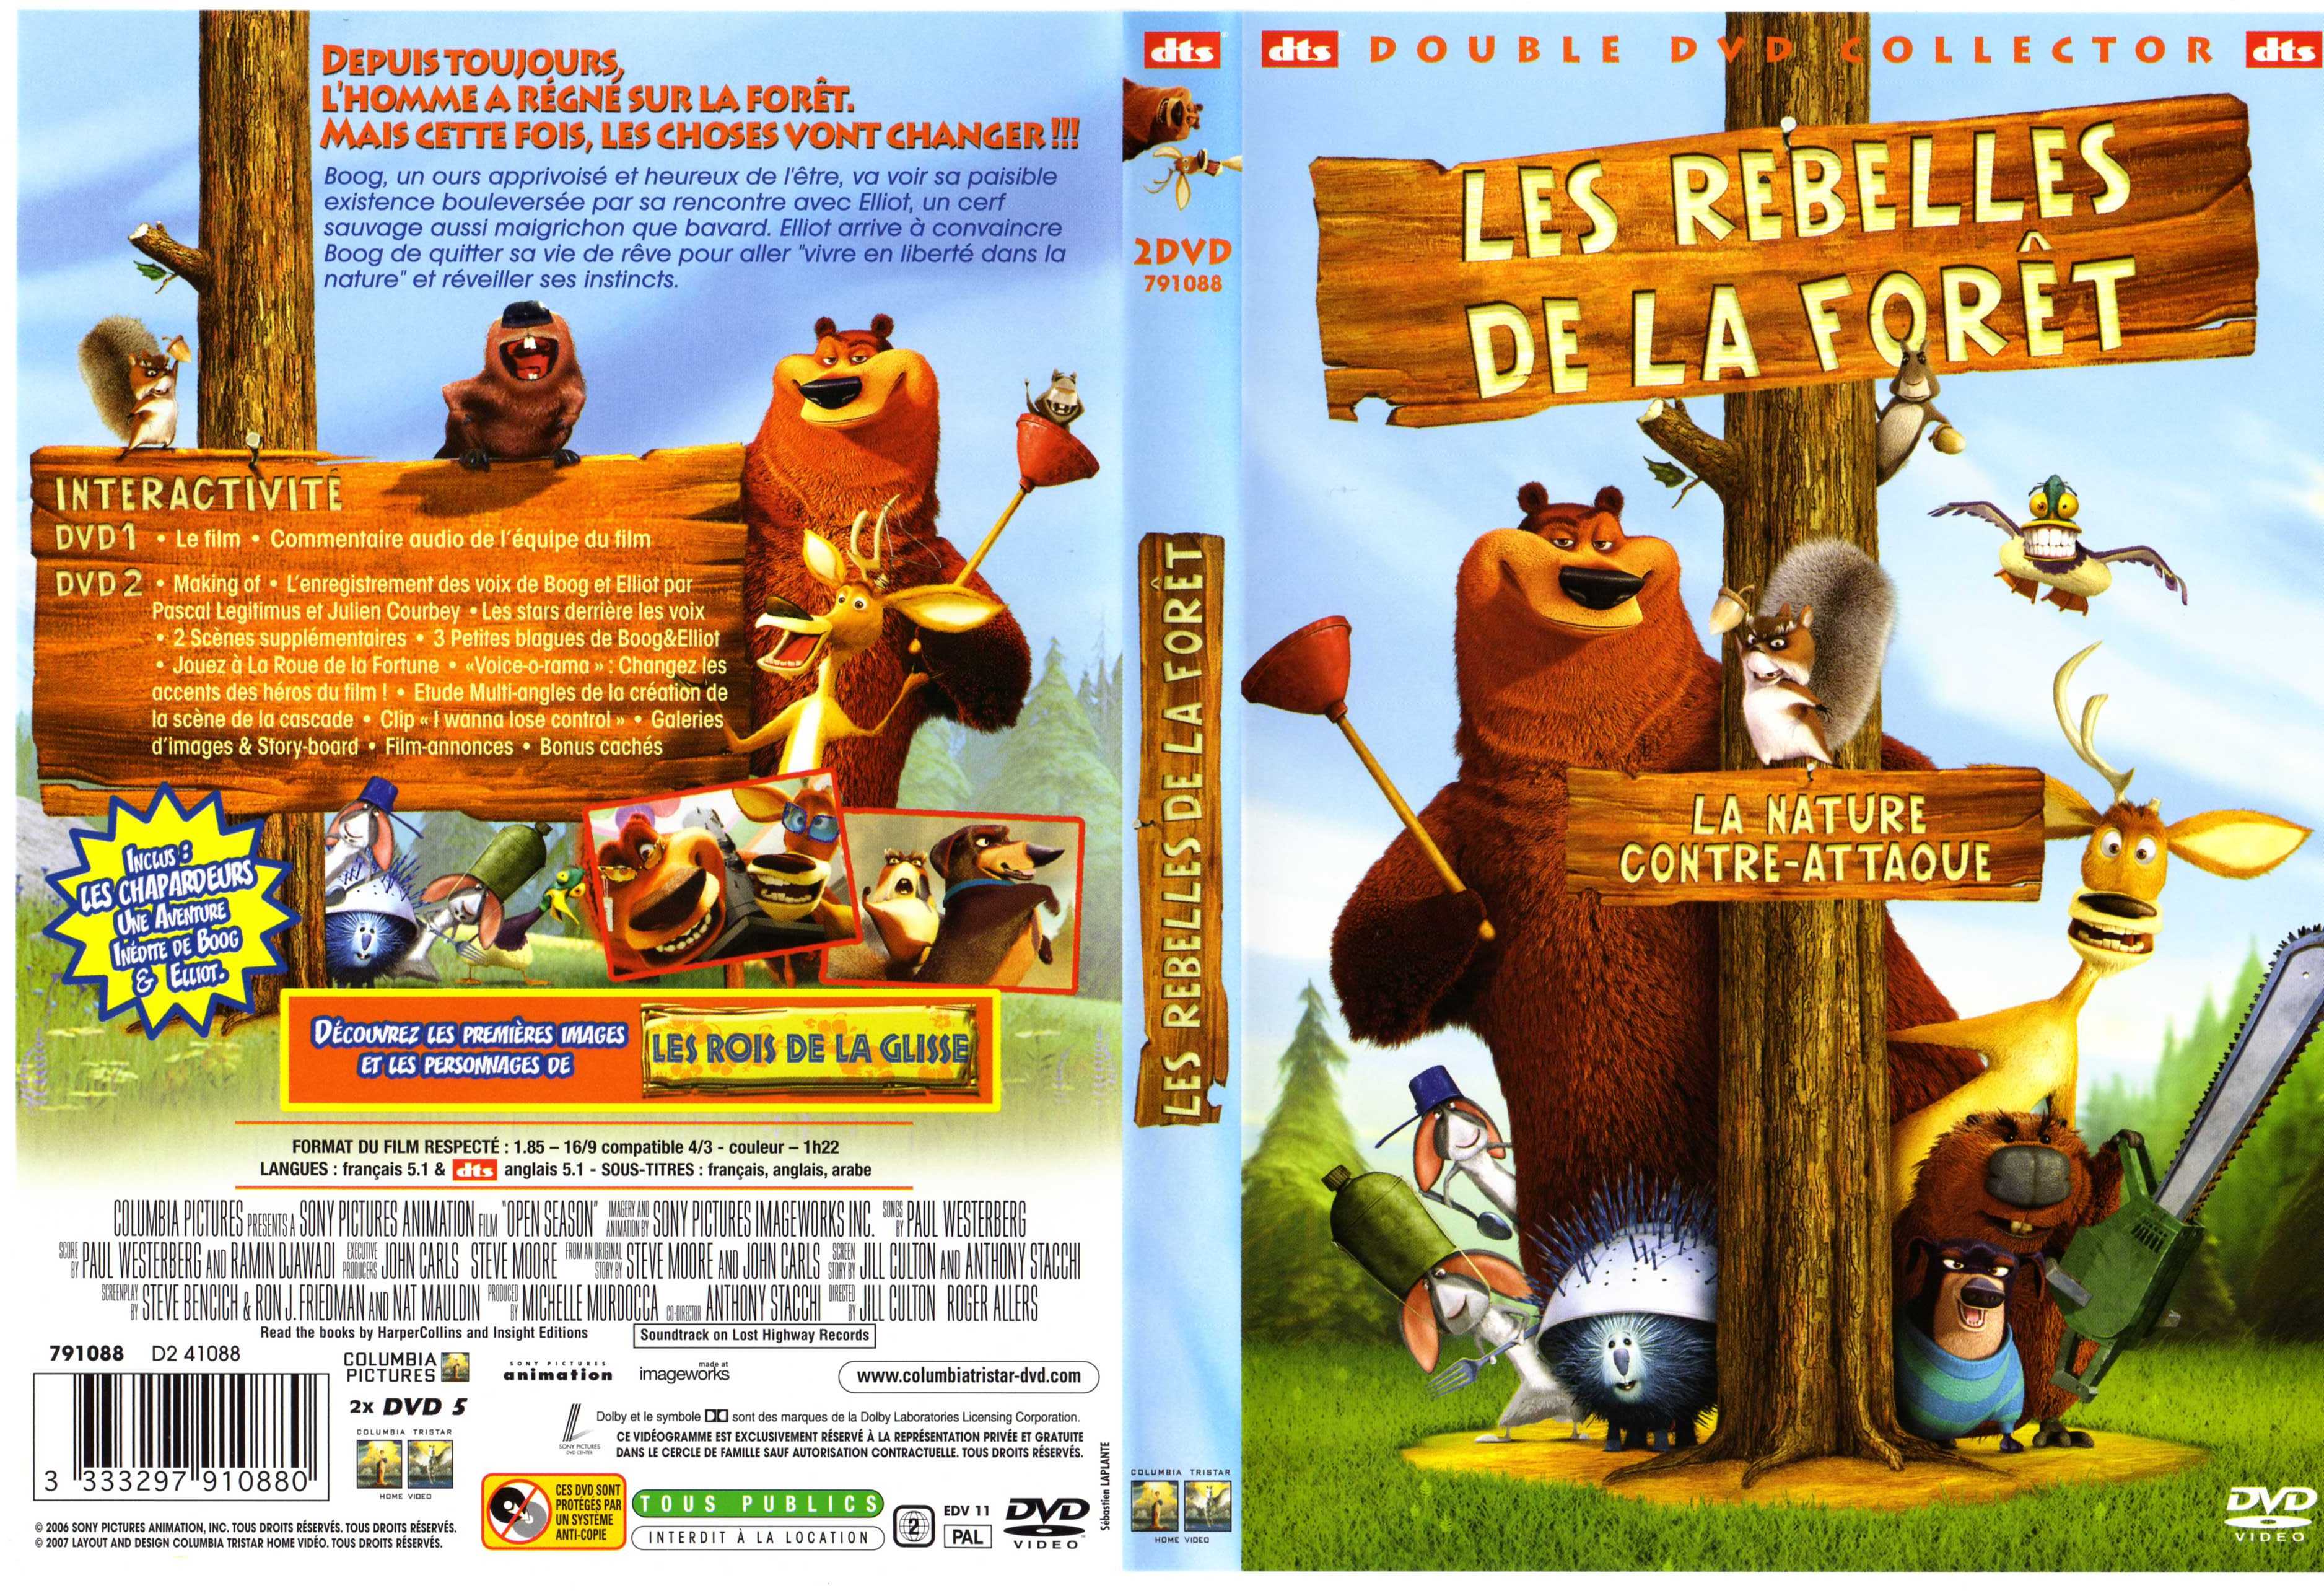 Jaquette DVD Les rebelles de la foret v2